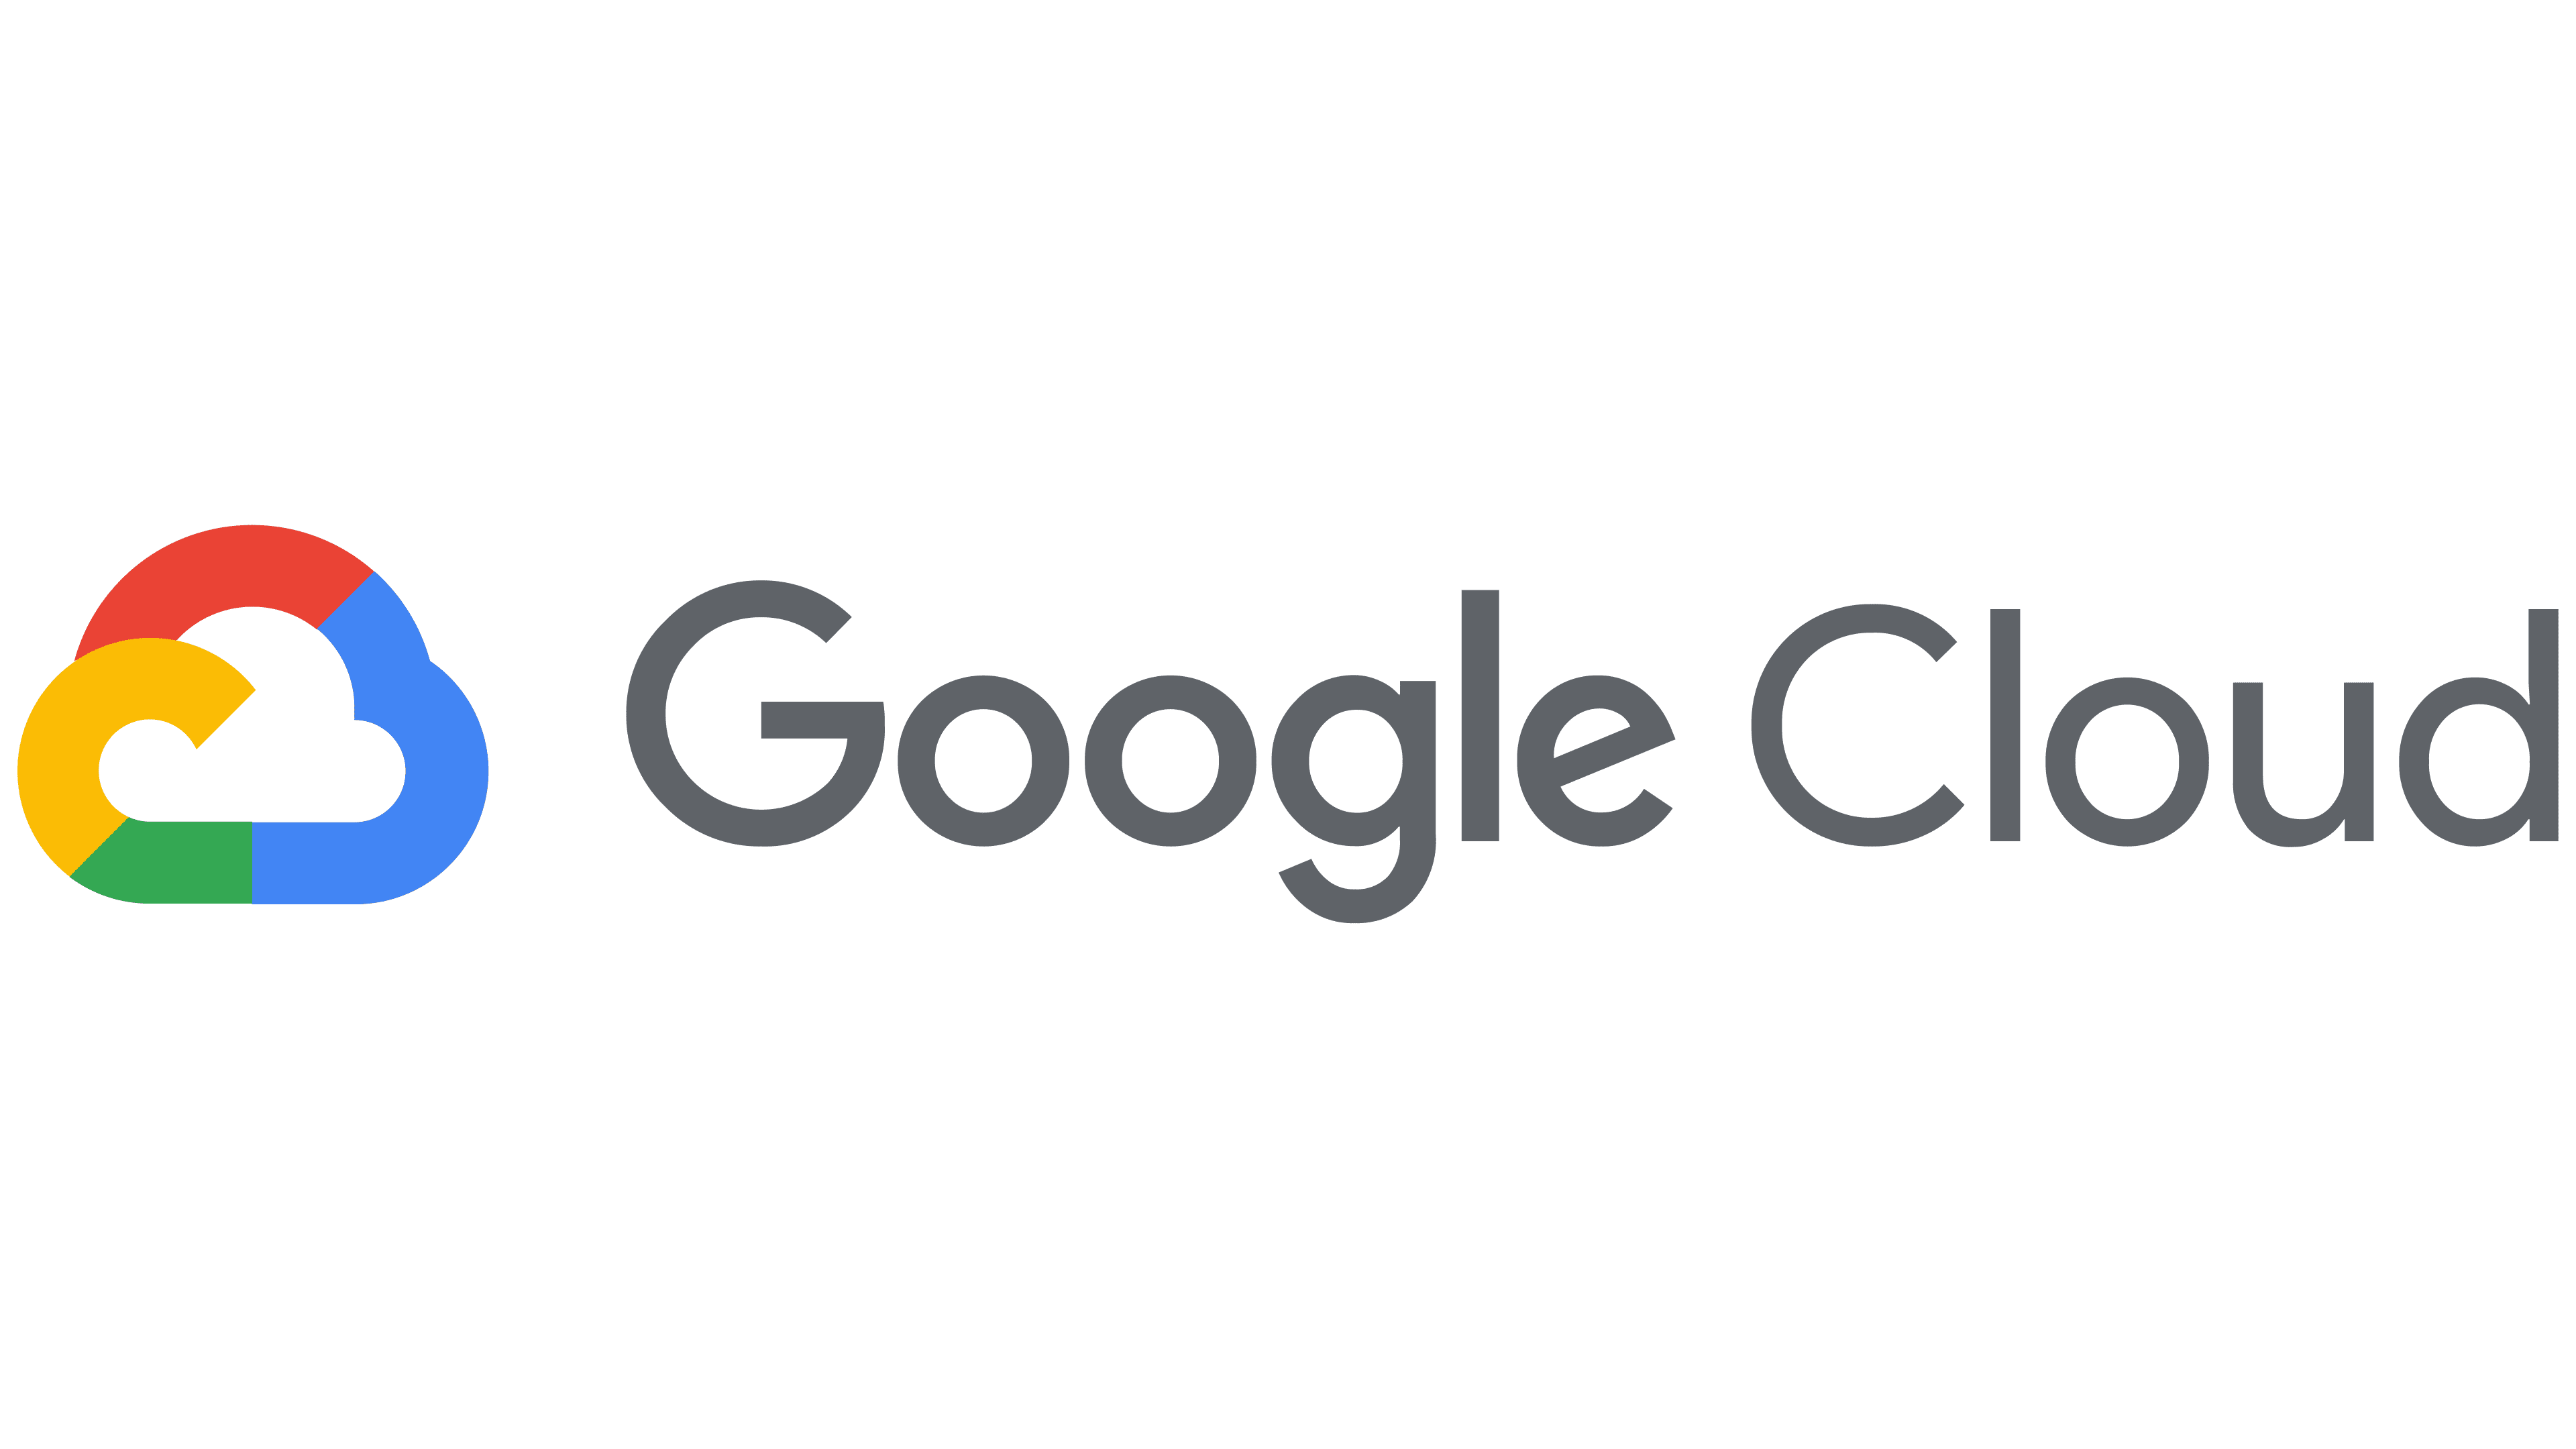 Google Cloud Logo : histoire, signification de l'emblème